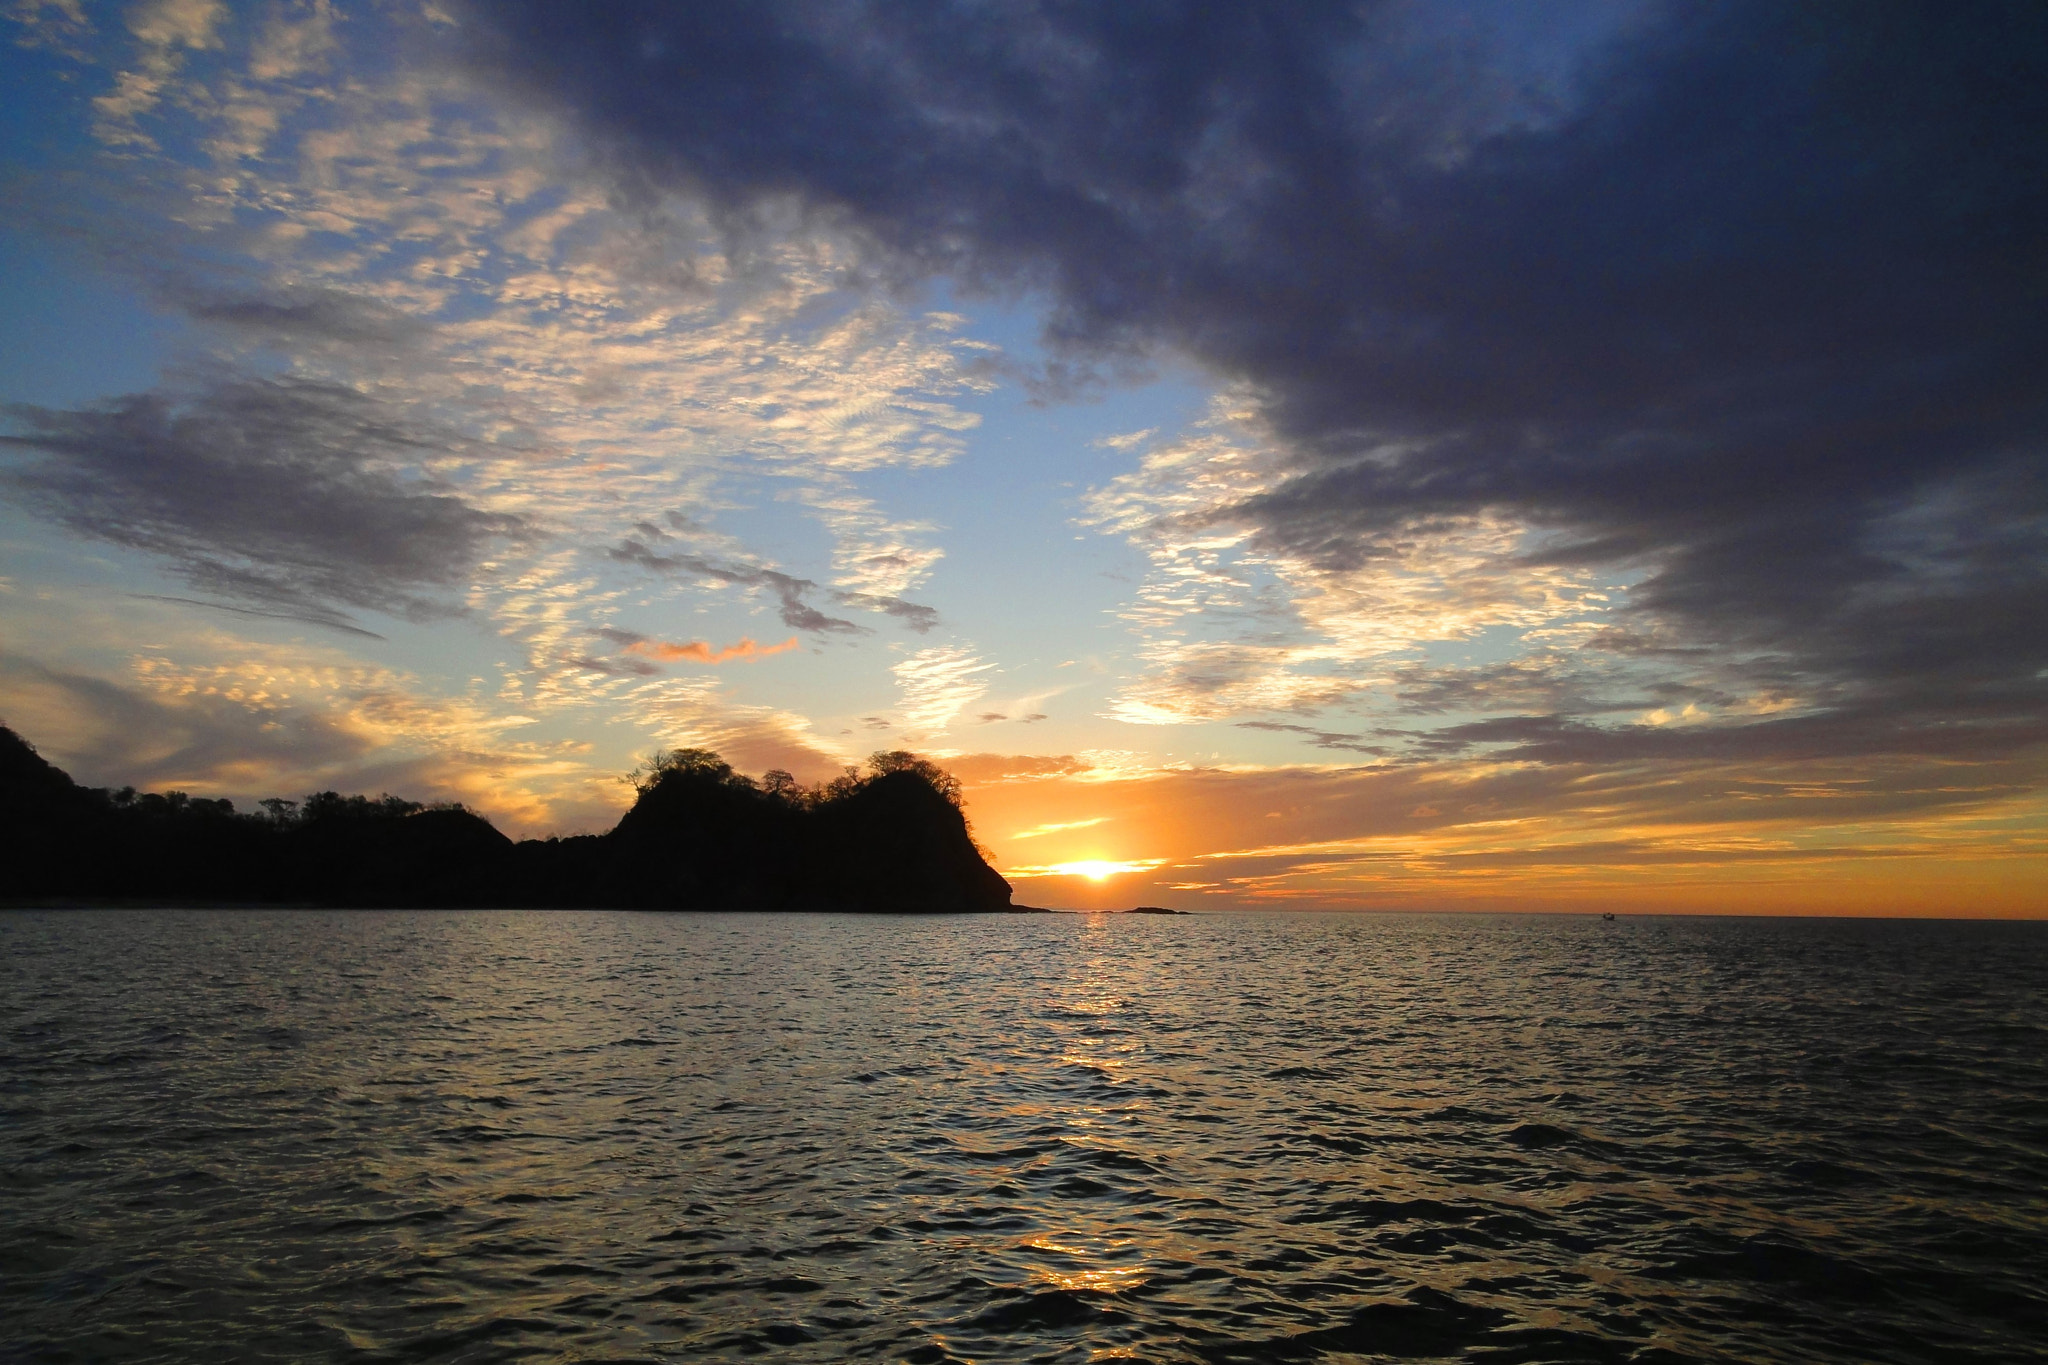 Sony DSC-WX5 sample photo. Península de papagayo, guanacaste, costa rica photography